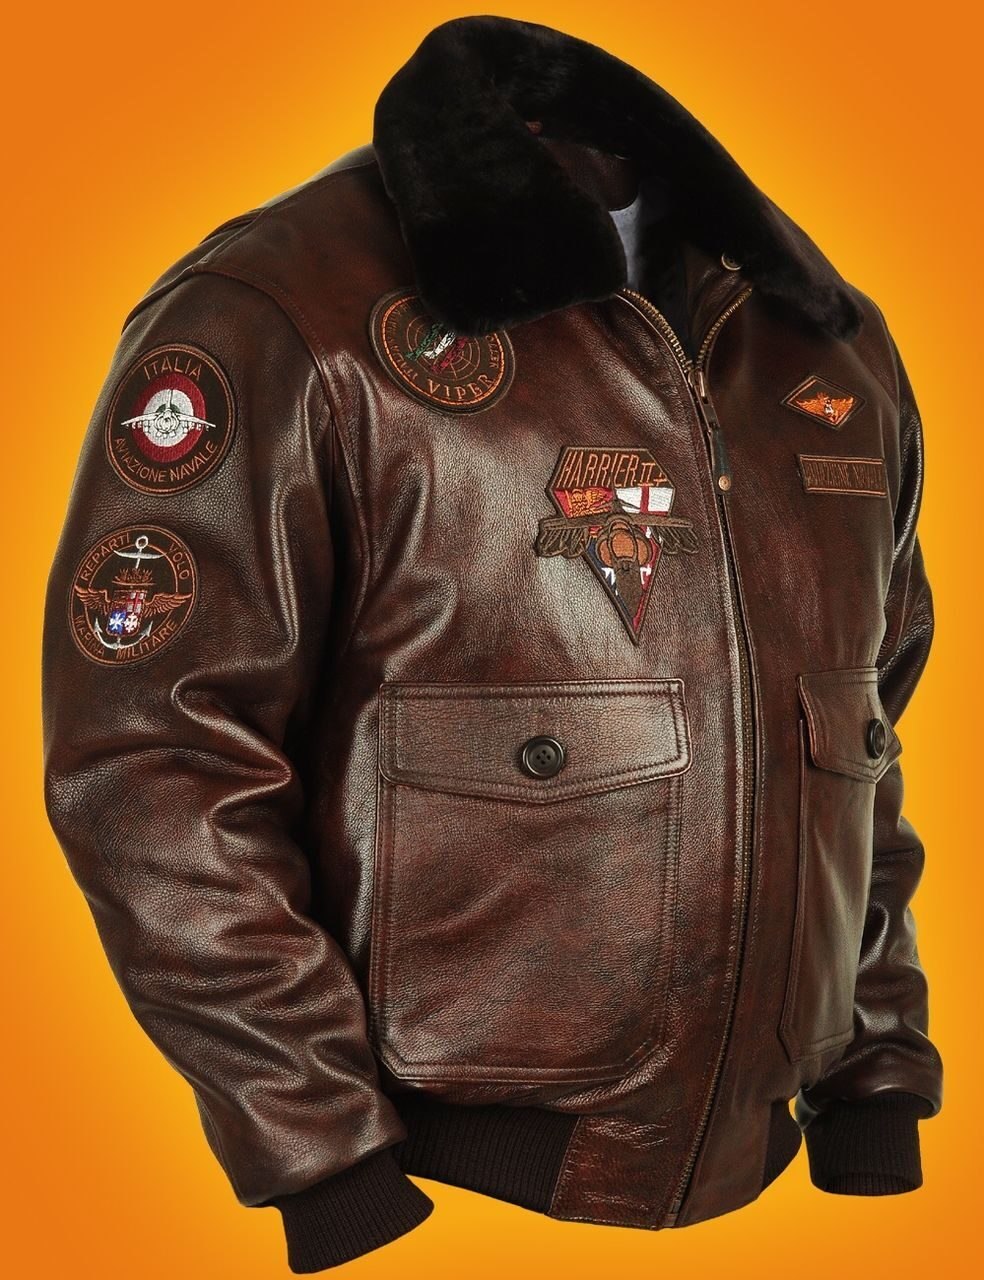 Куртка кожаная мужская россия. Американский 71334 Top Gun куртка пилот. Куртка Marina Militare. Лётная куртка Top Gun Navy g-1. Кожаная куртка Redskins Top Gun.